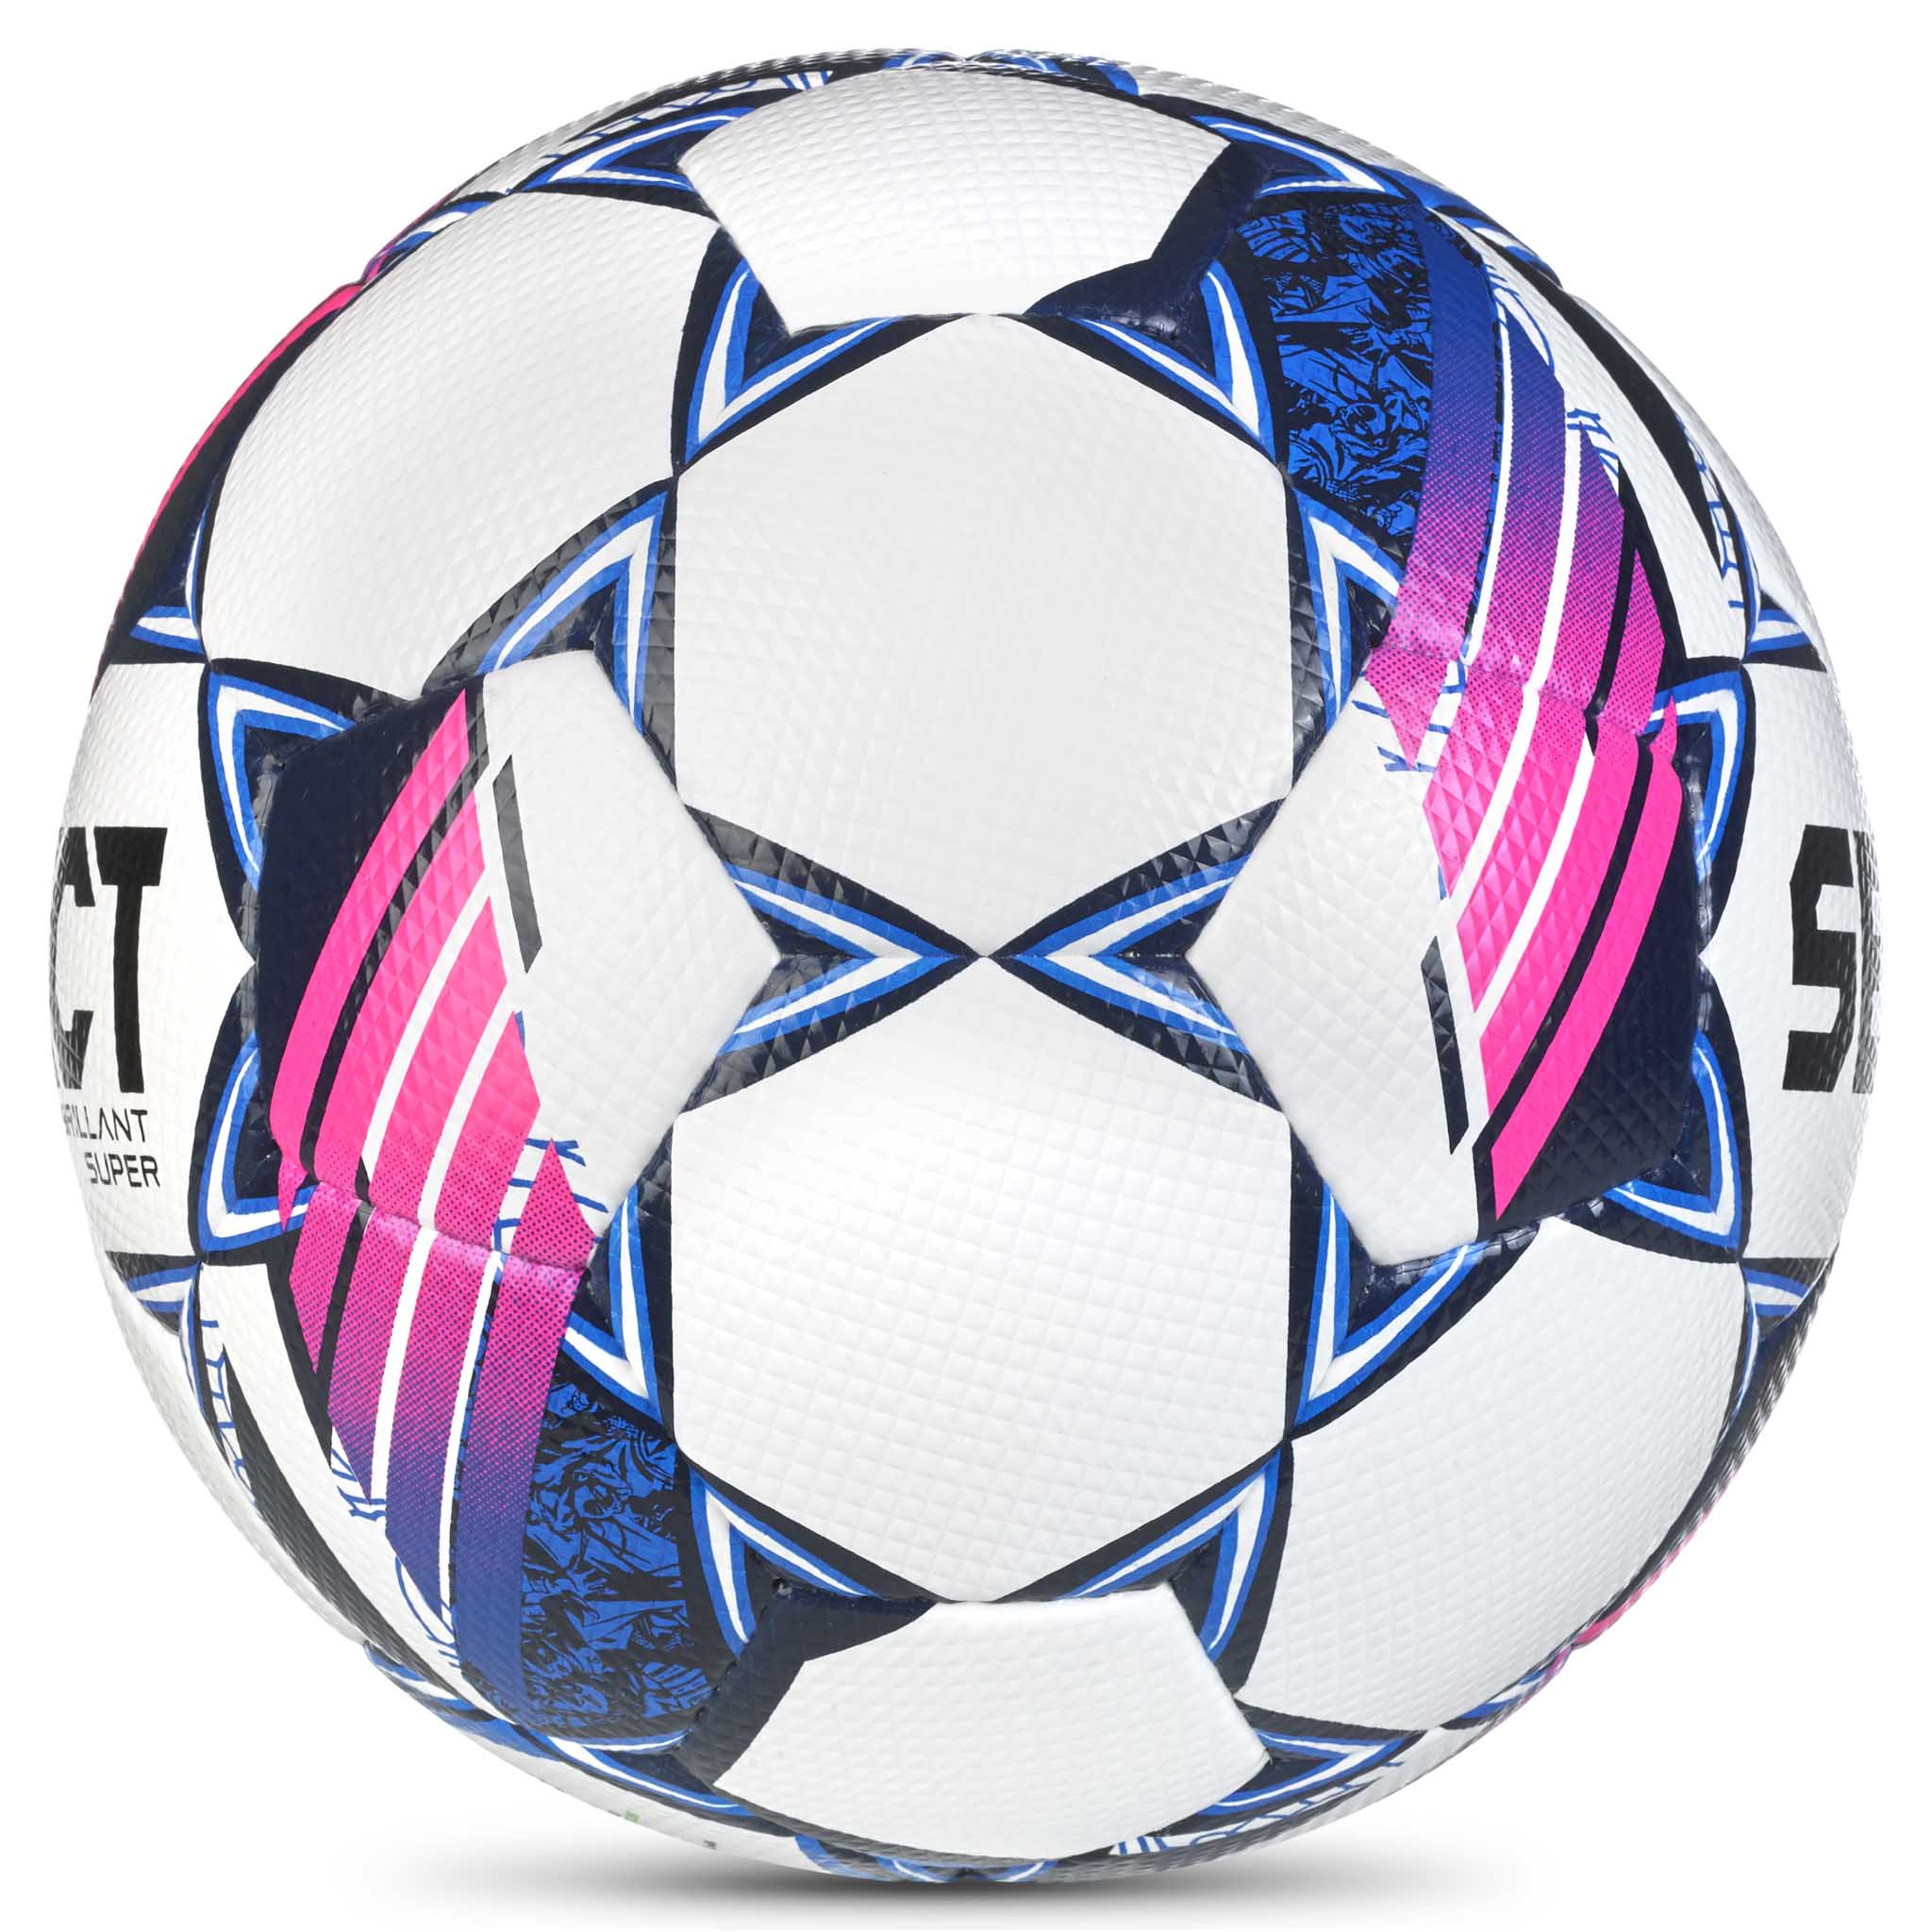 Fodbold - Brillant Super #farve_hvid/blå